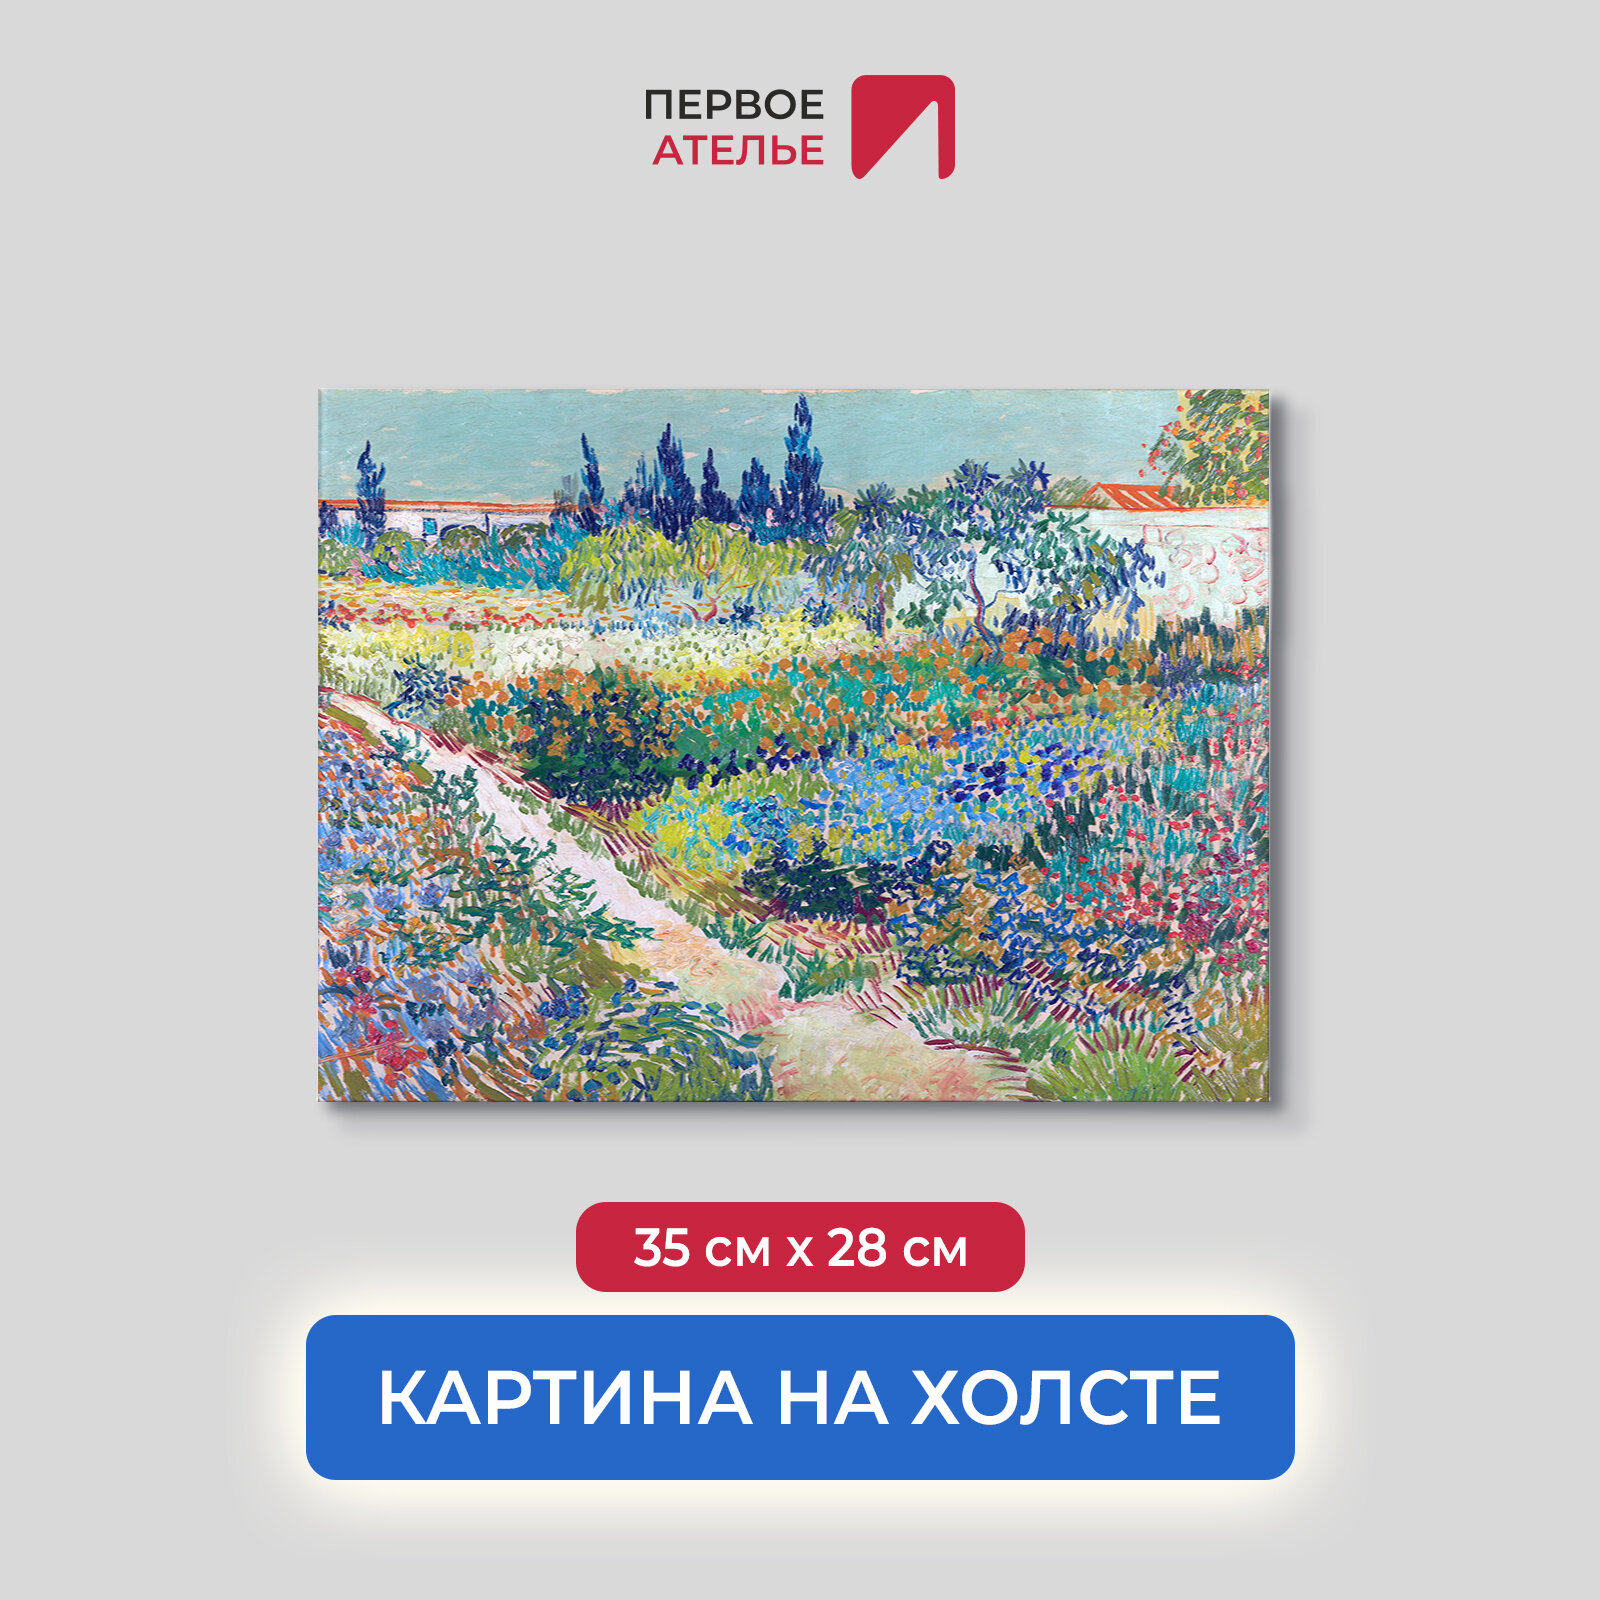 Постер для интерьера на стену первое ателье - репродукция картины Ван Гога "Цветущий сад с тропинкой" 35х28 см (ШхВ), на холсте